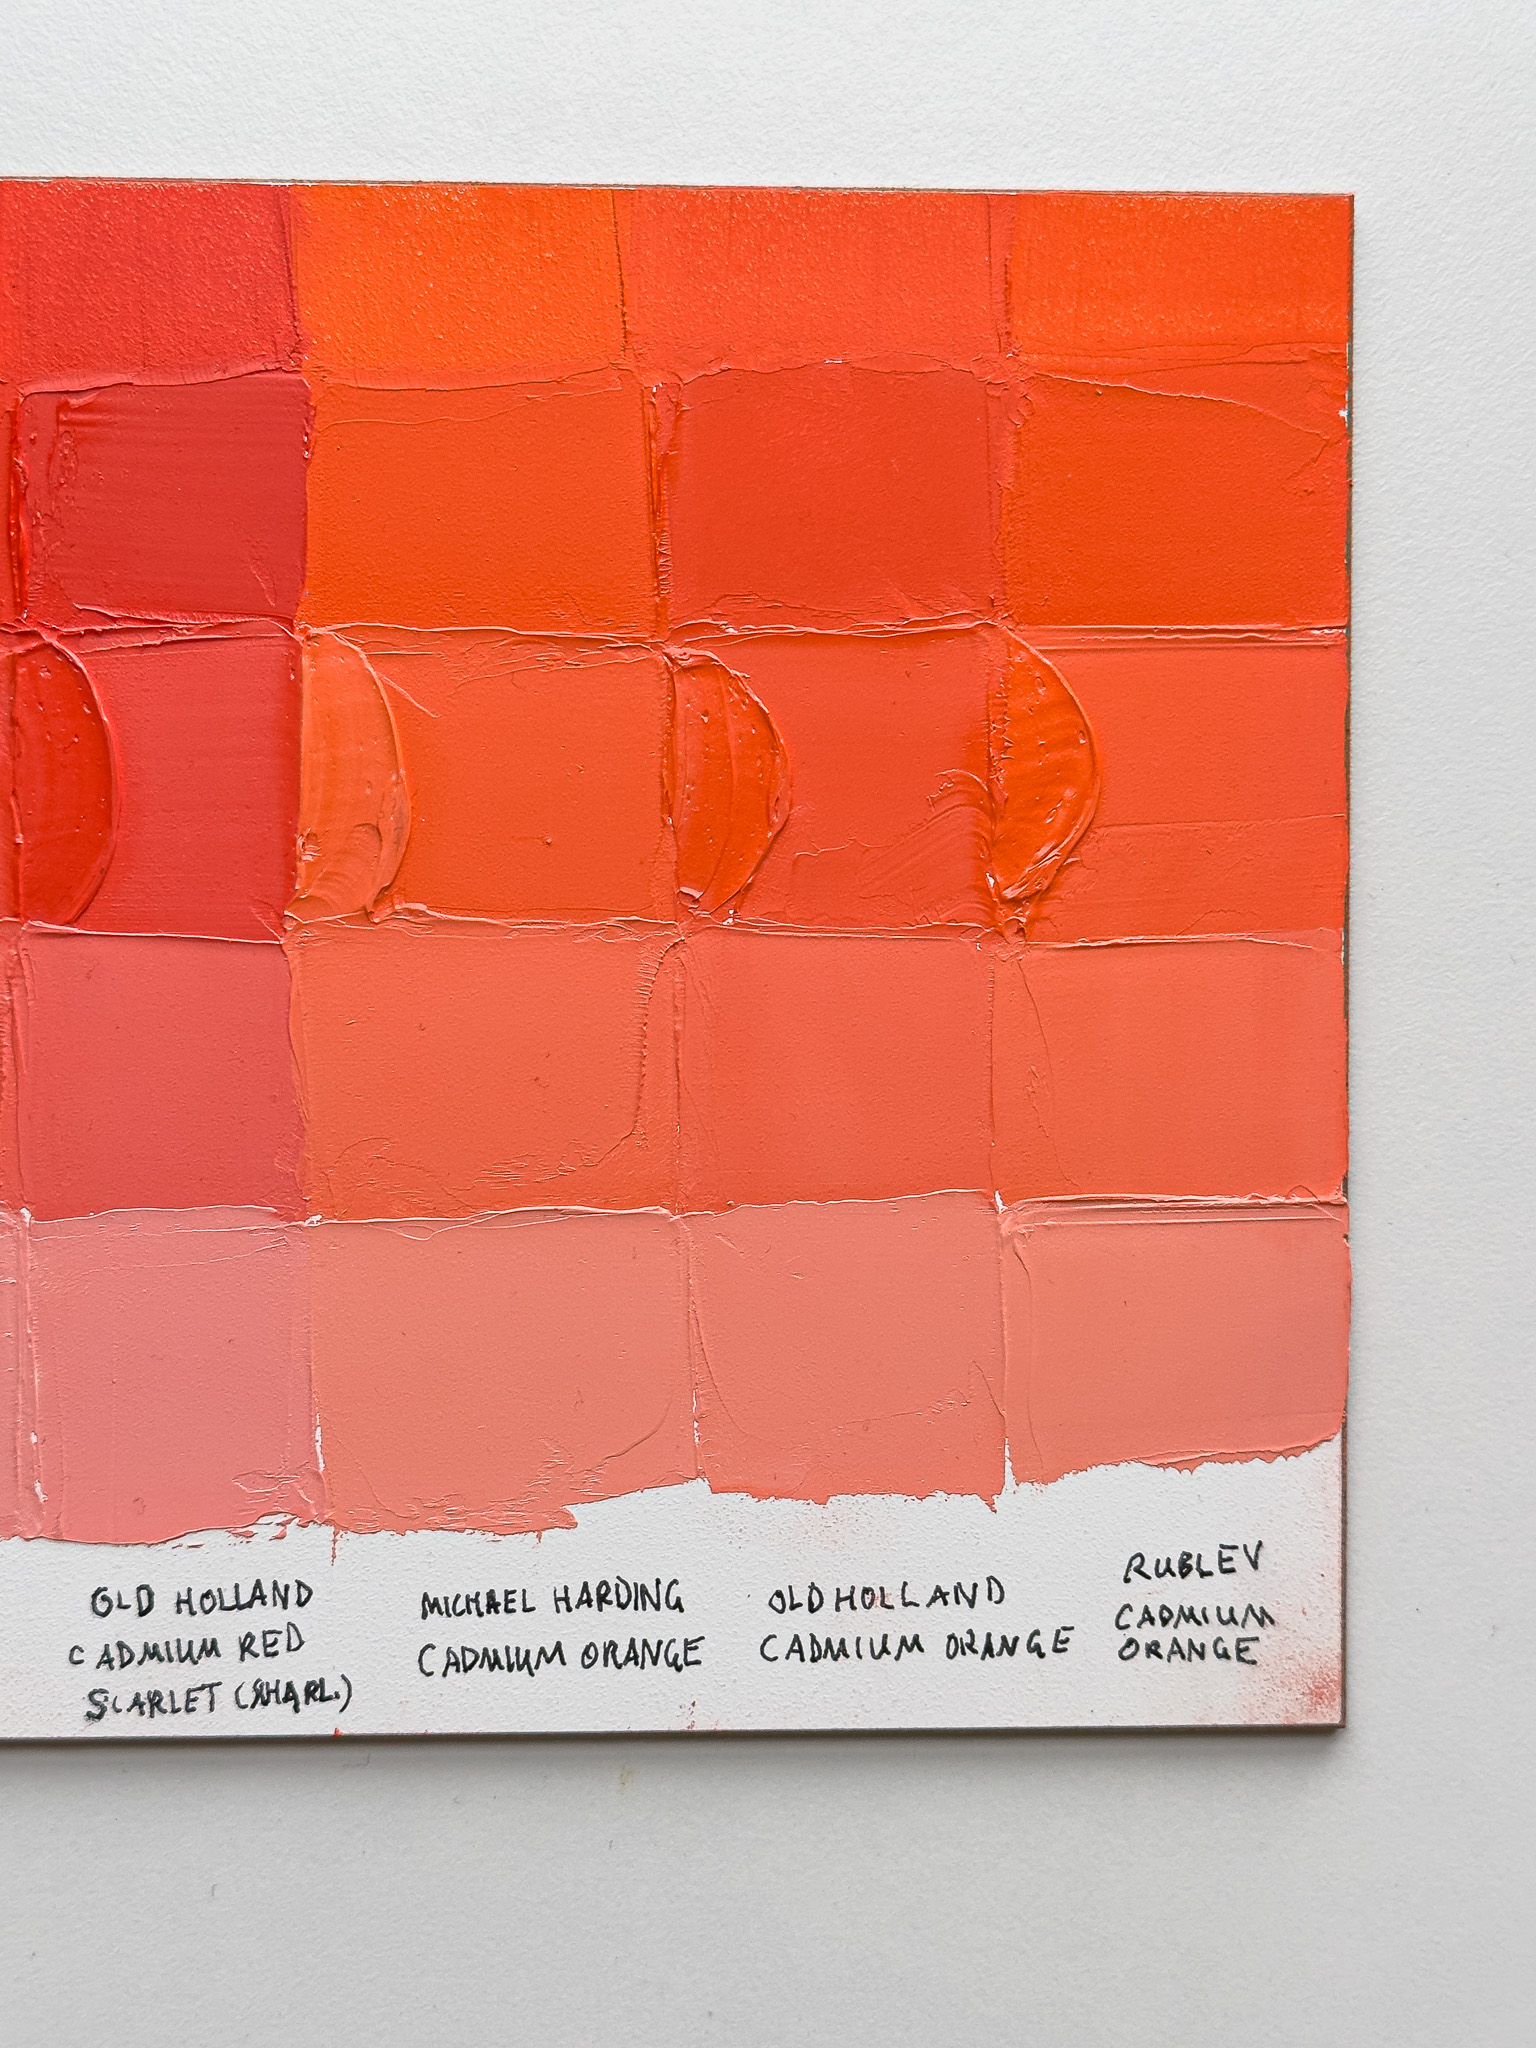 Classic Cadmium Red-Orange Oil Paint Color Comparison and | Paint